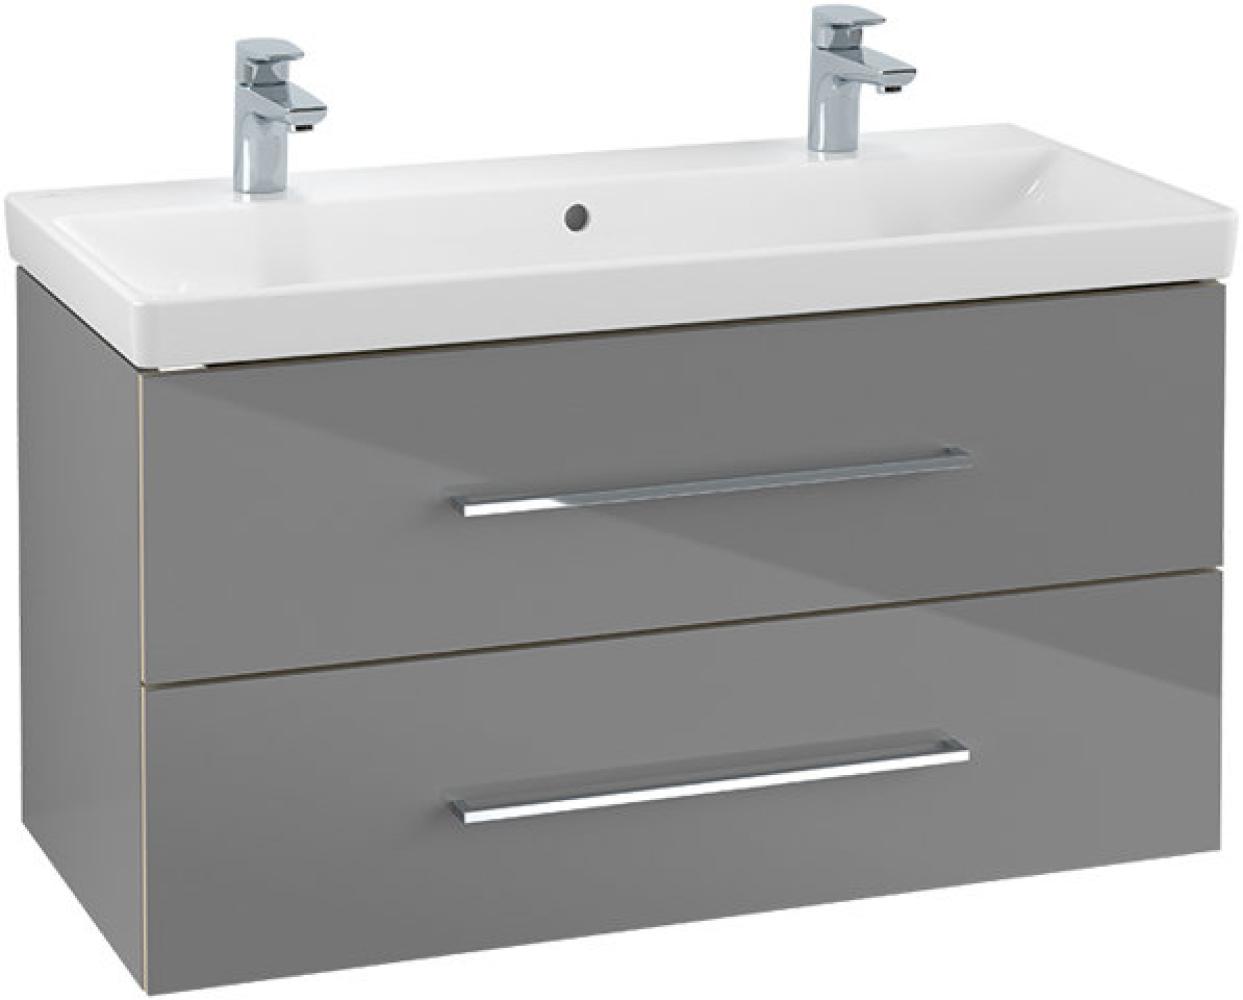 Villeroy & Boch Avento Waschtischunterschrank A89200, 2 Auszüge, Breite 980mm, Farbe: Crystal Grey - A89200B1 Bild 1